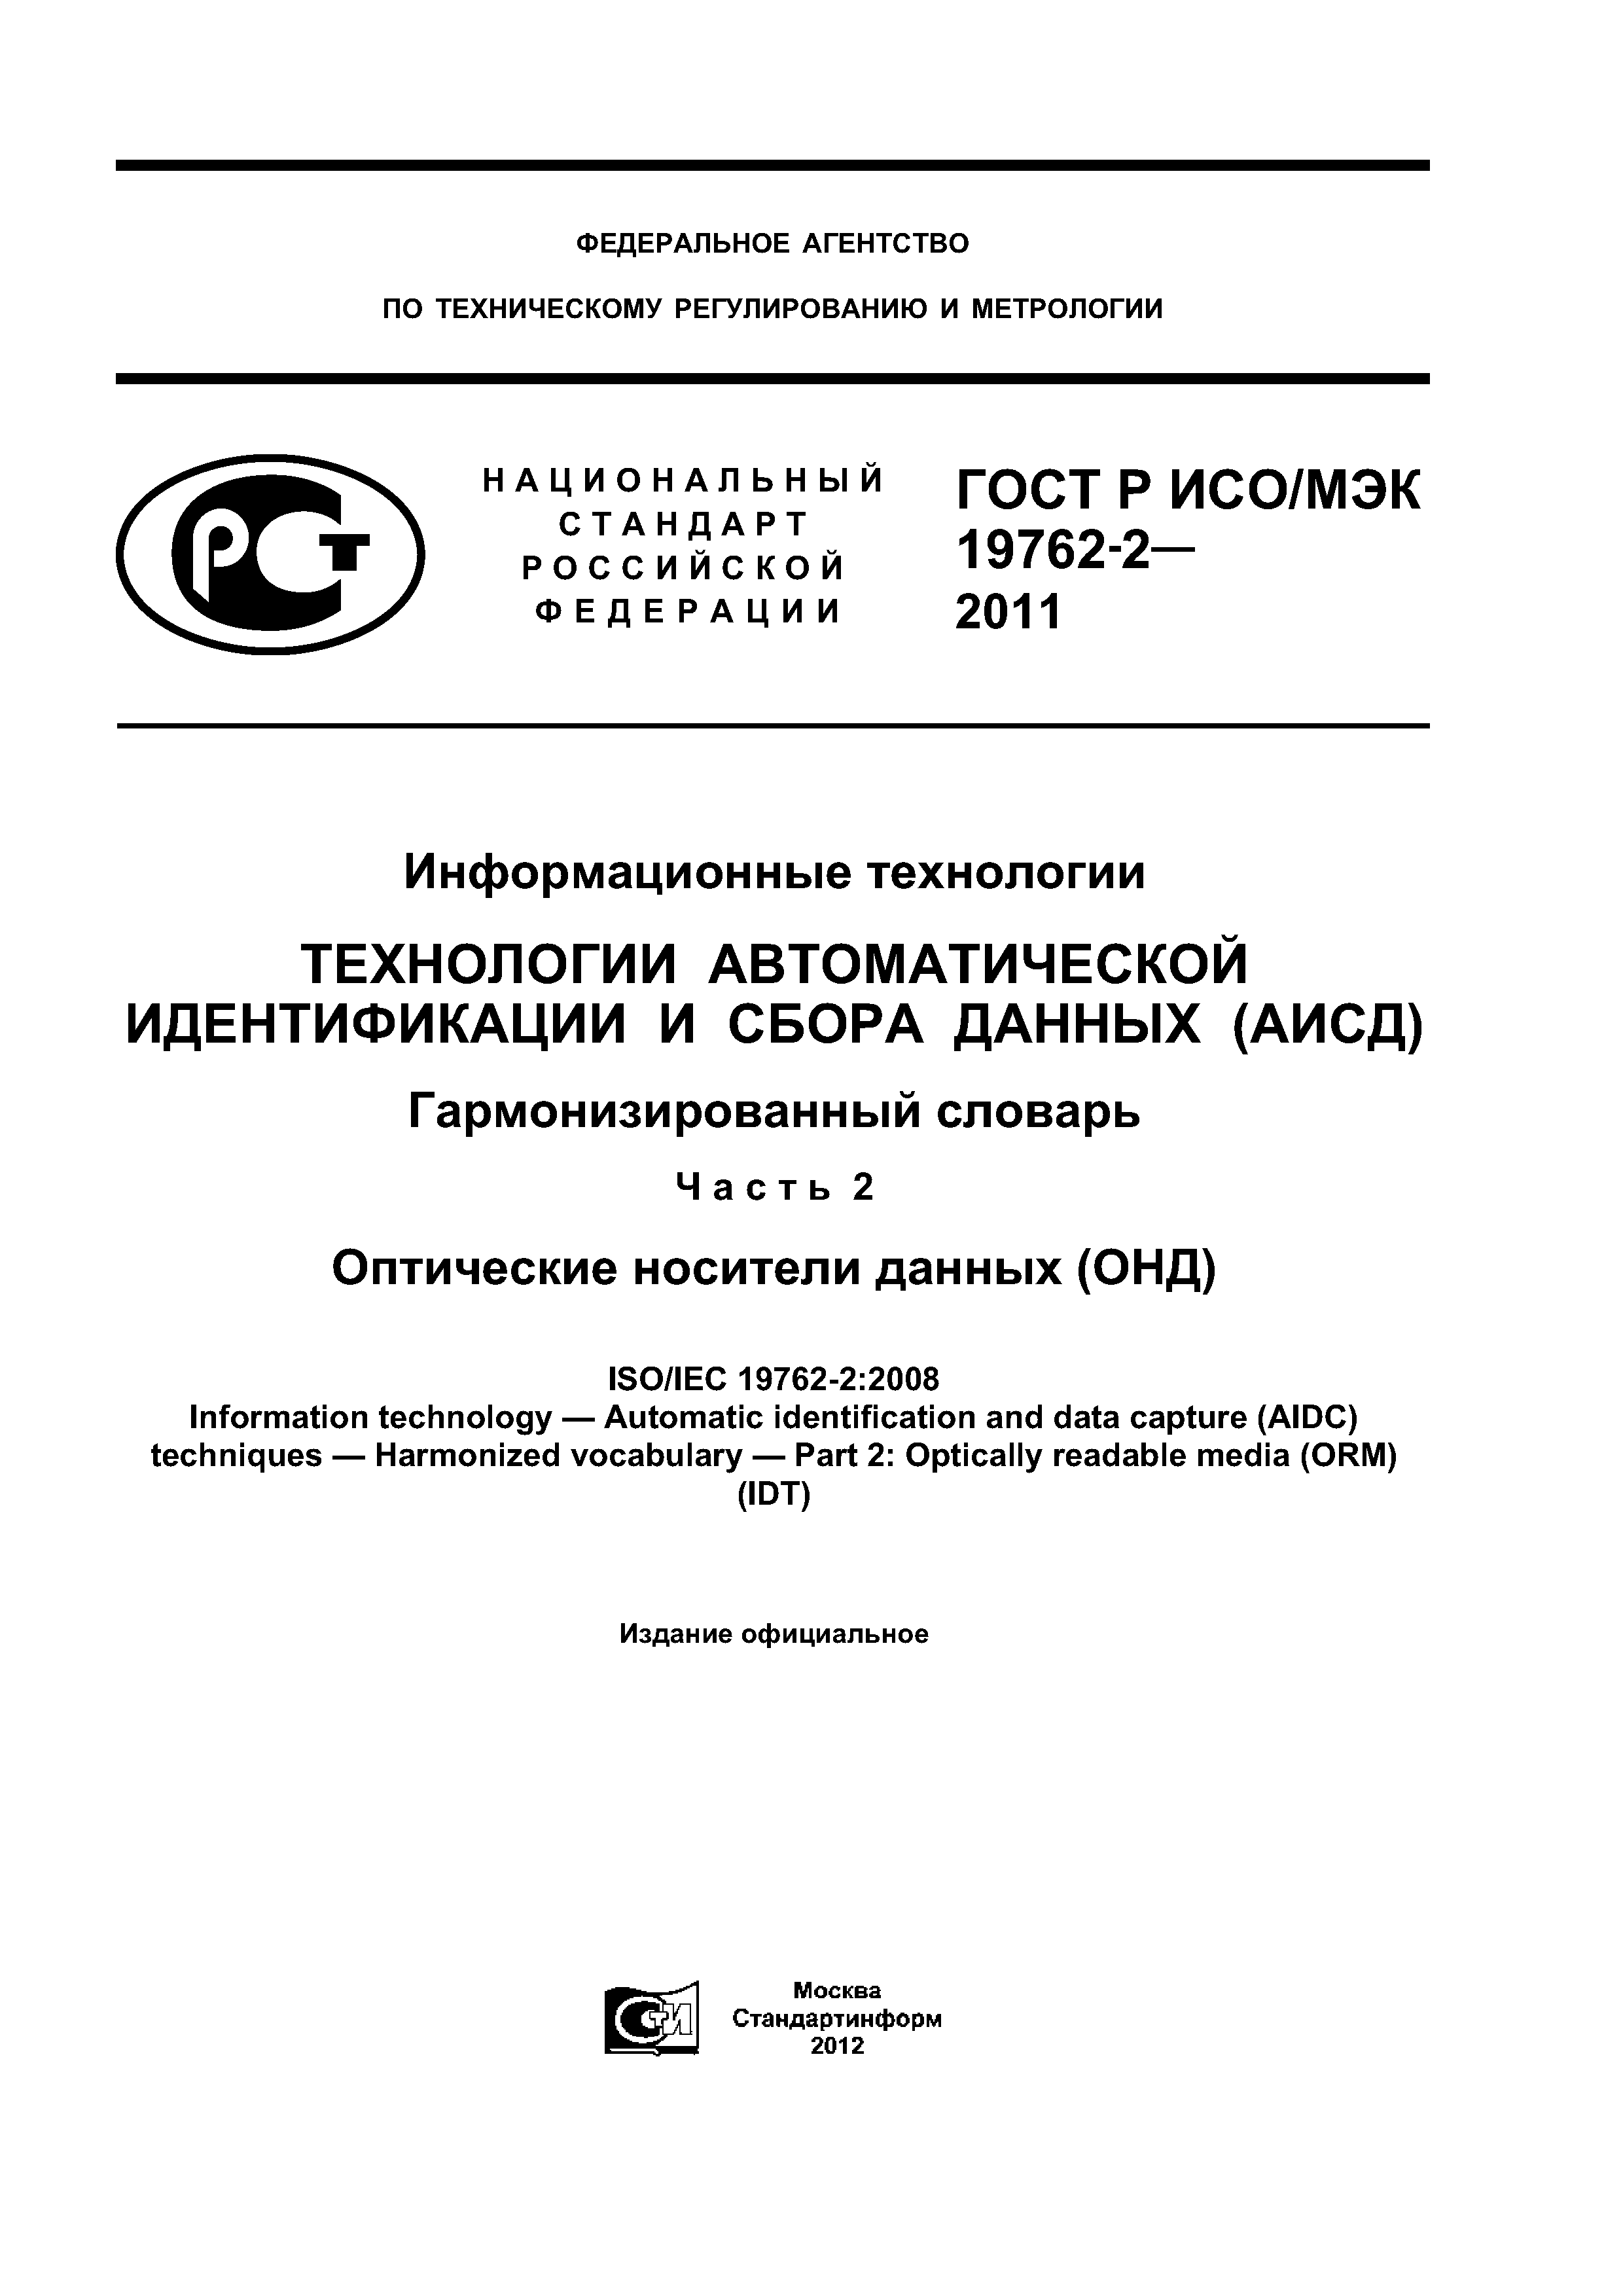 ГОСТ Р ИСО/МЭК 19762-2-2011